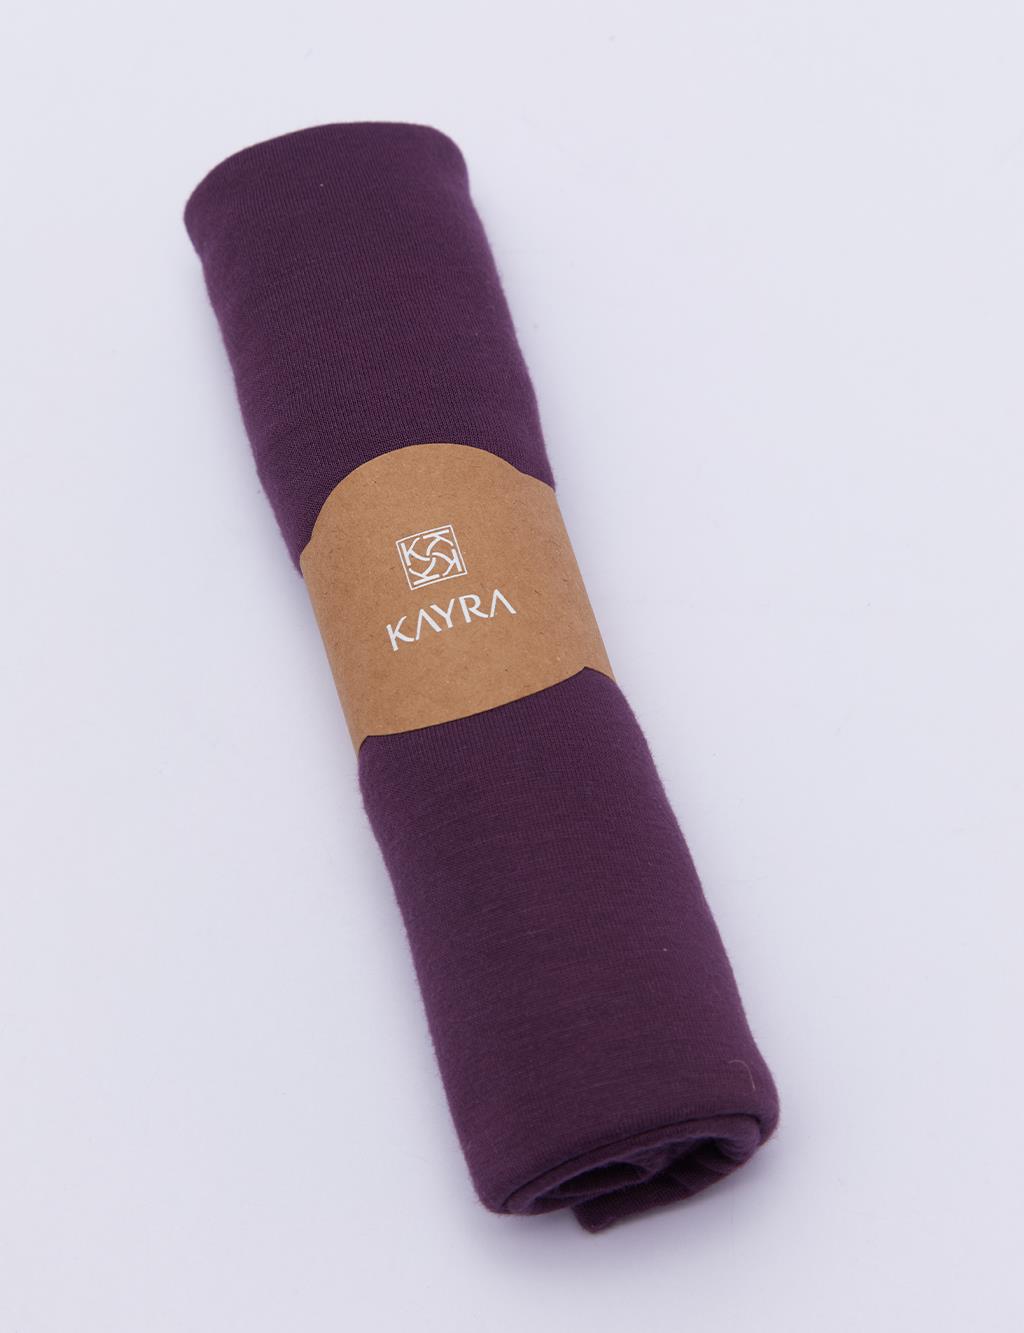 Базовая чесаная шаль сливового цвета Kayra